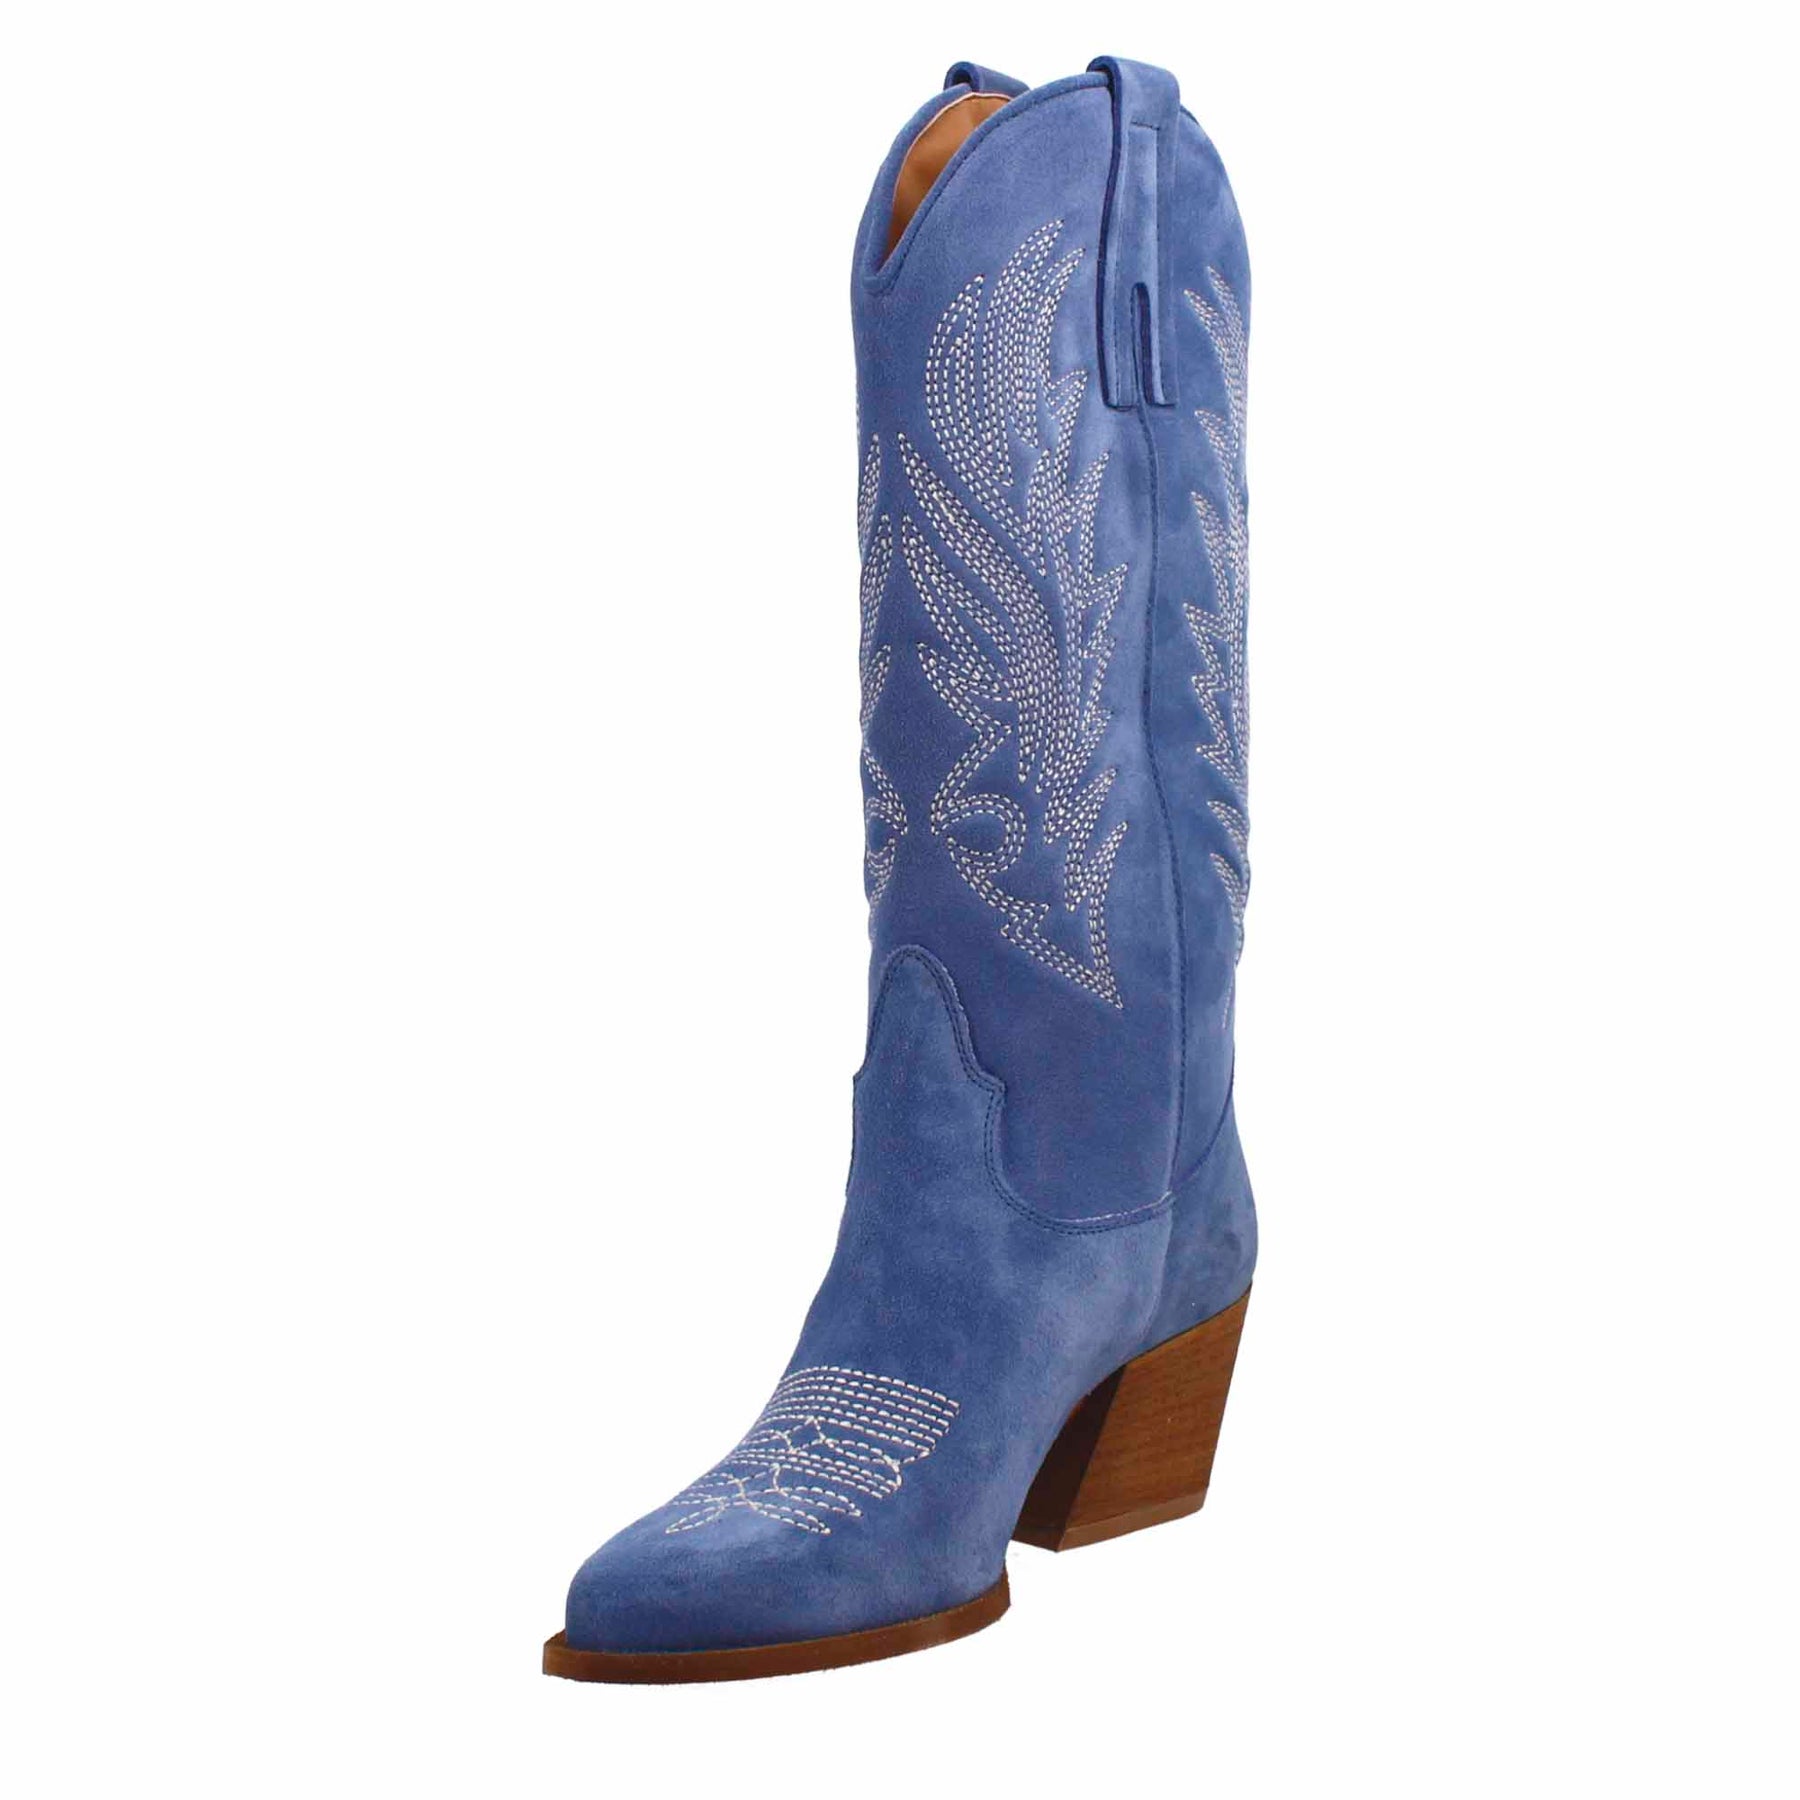 Bottes texanes moyennes pour femme en daim bleu avec broderie.